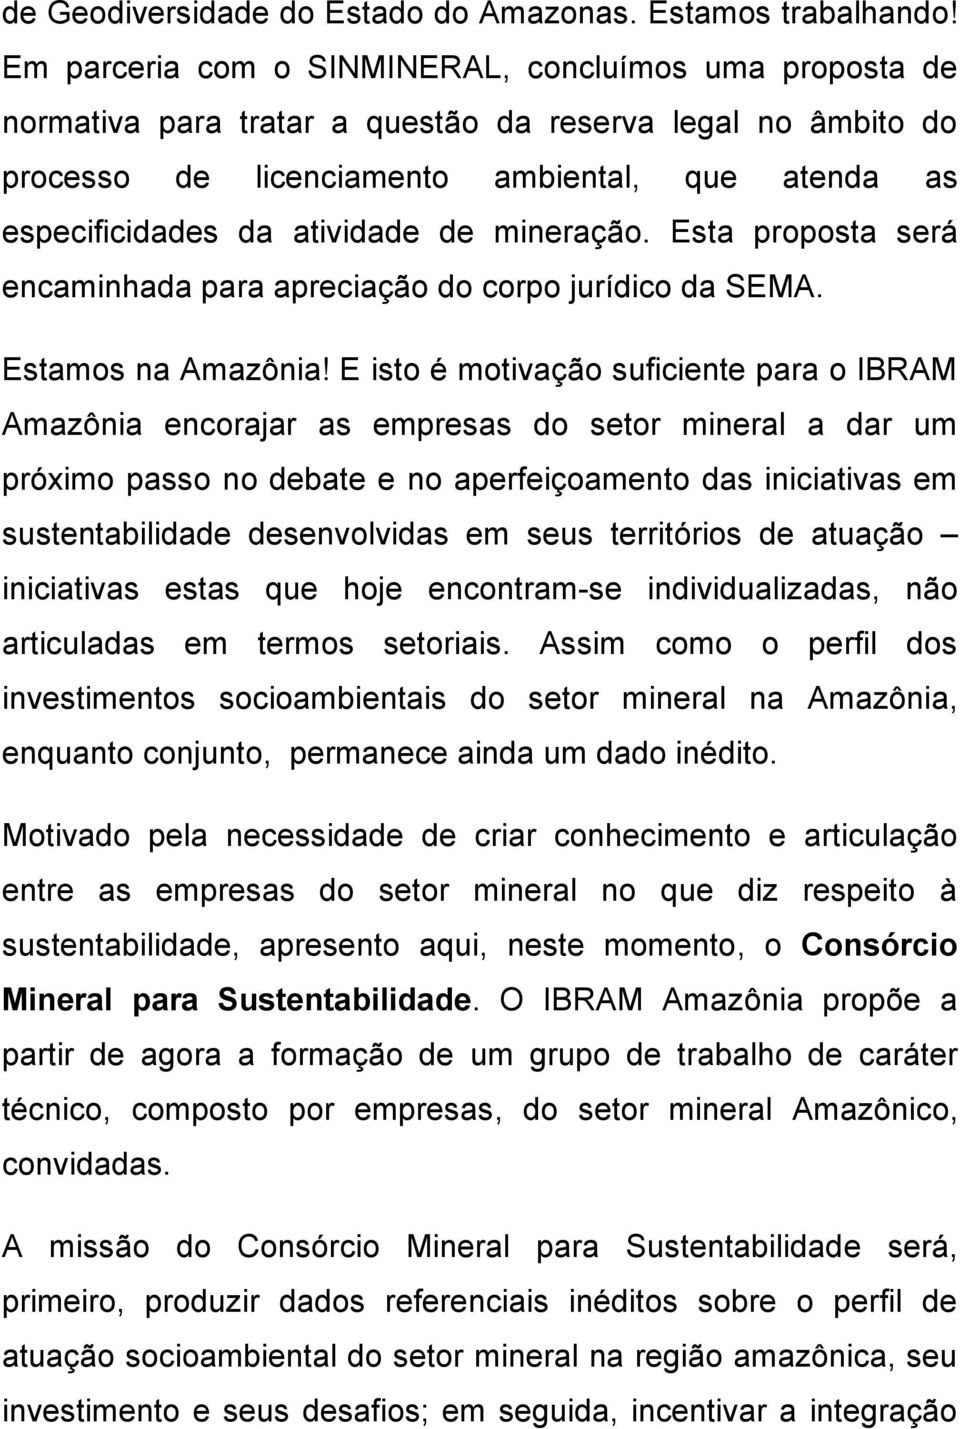 de mineração. Esta proposta será encaminhada para apreciação do corpo jurídico da SEMA. Estamos na Amazônia!